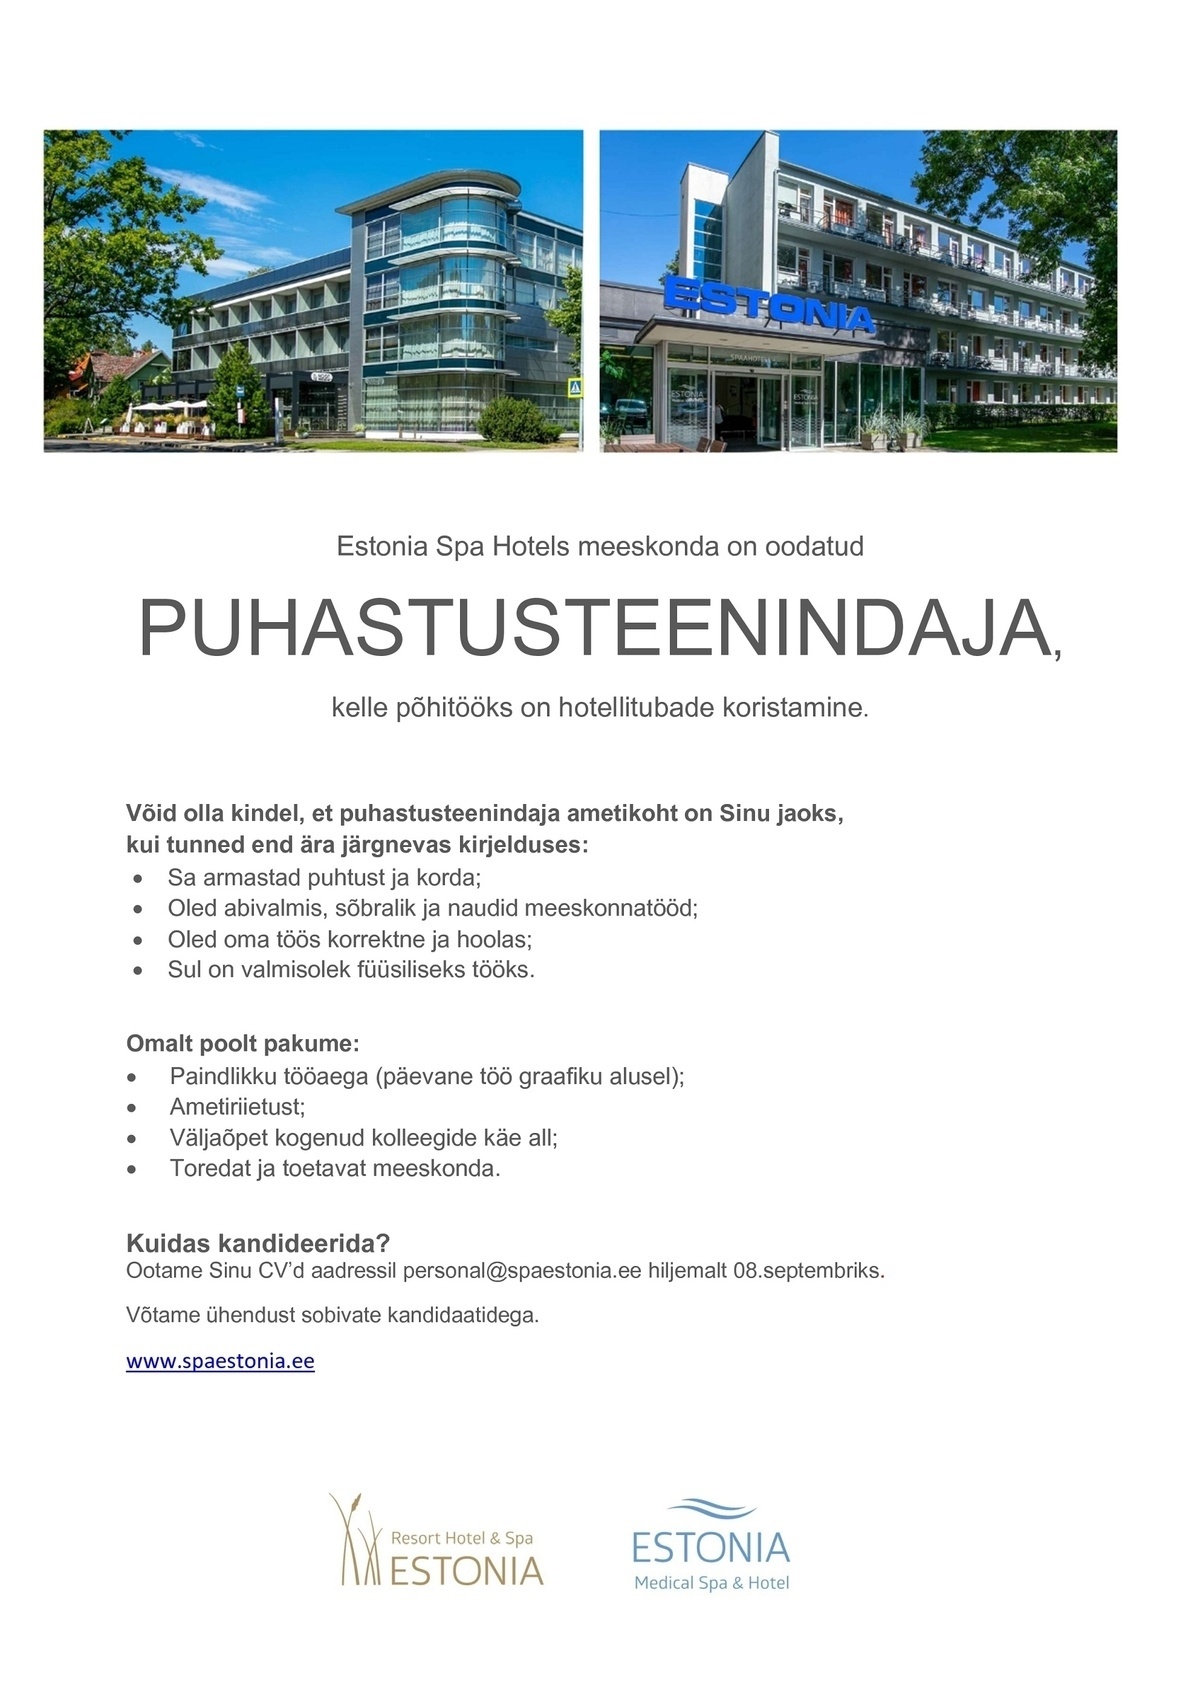 Estonia Spa Hotels AS Puhastusteenindaja Estonia Spa Hotels´is